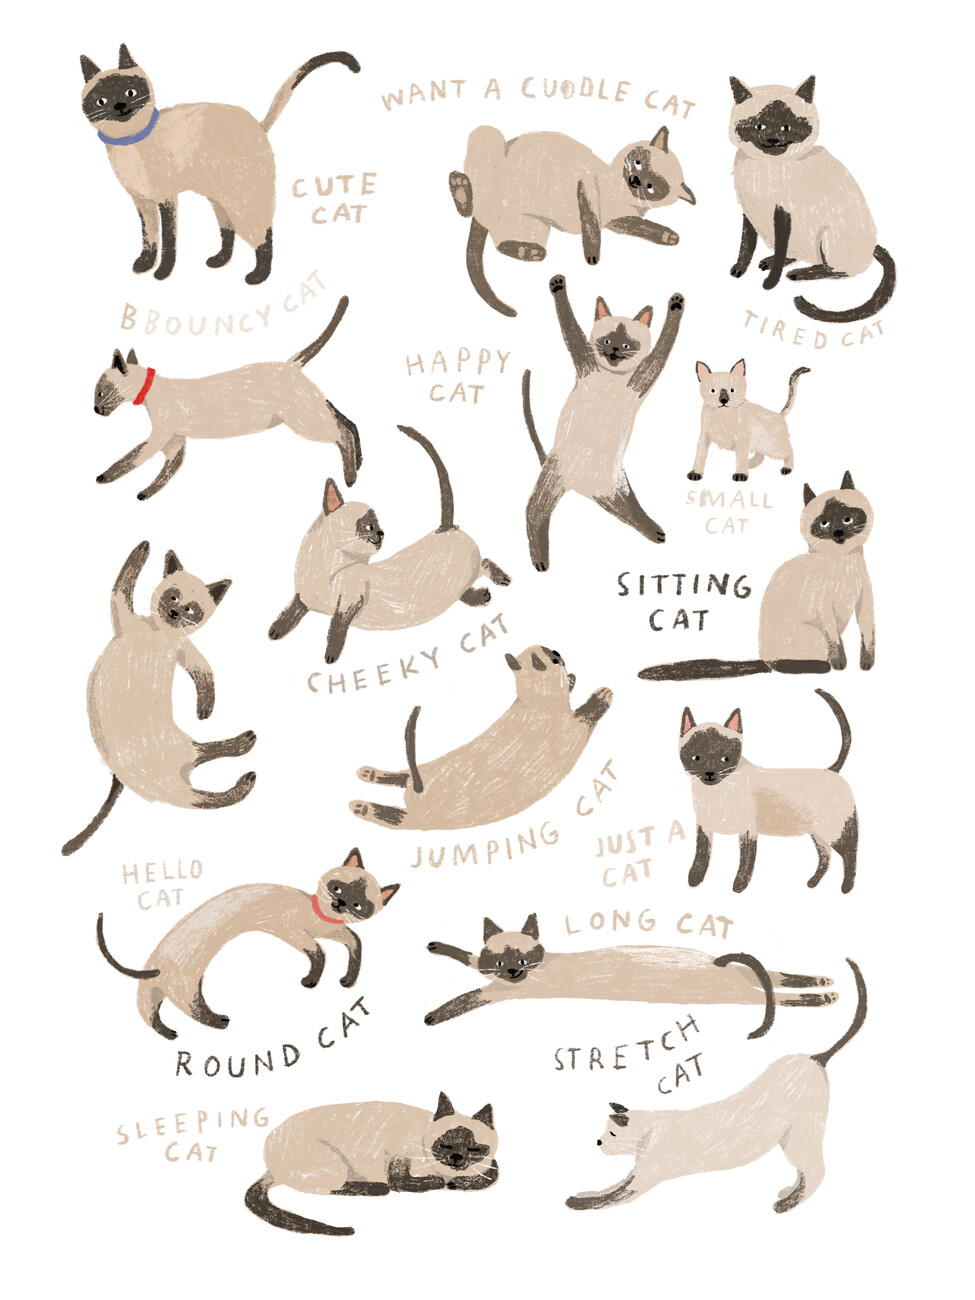 Hanna Melin Ilustrace Siamese Cat Print, Hanna Melin, (30 x 40 cm)